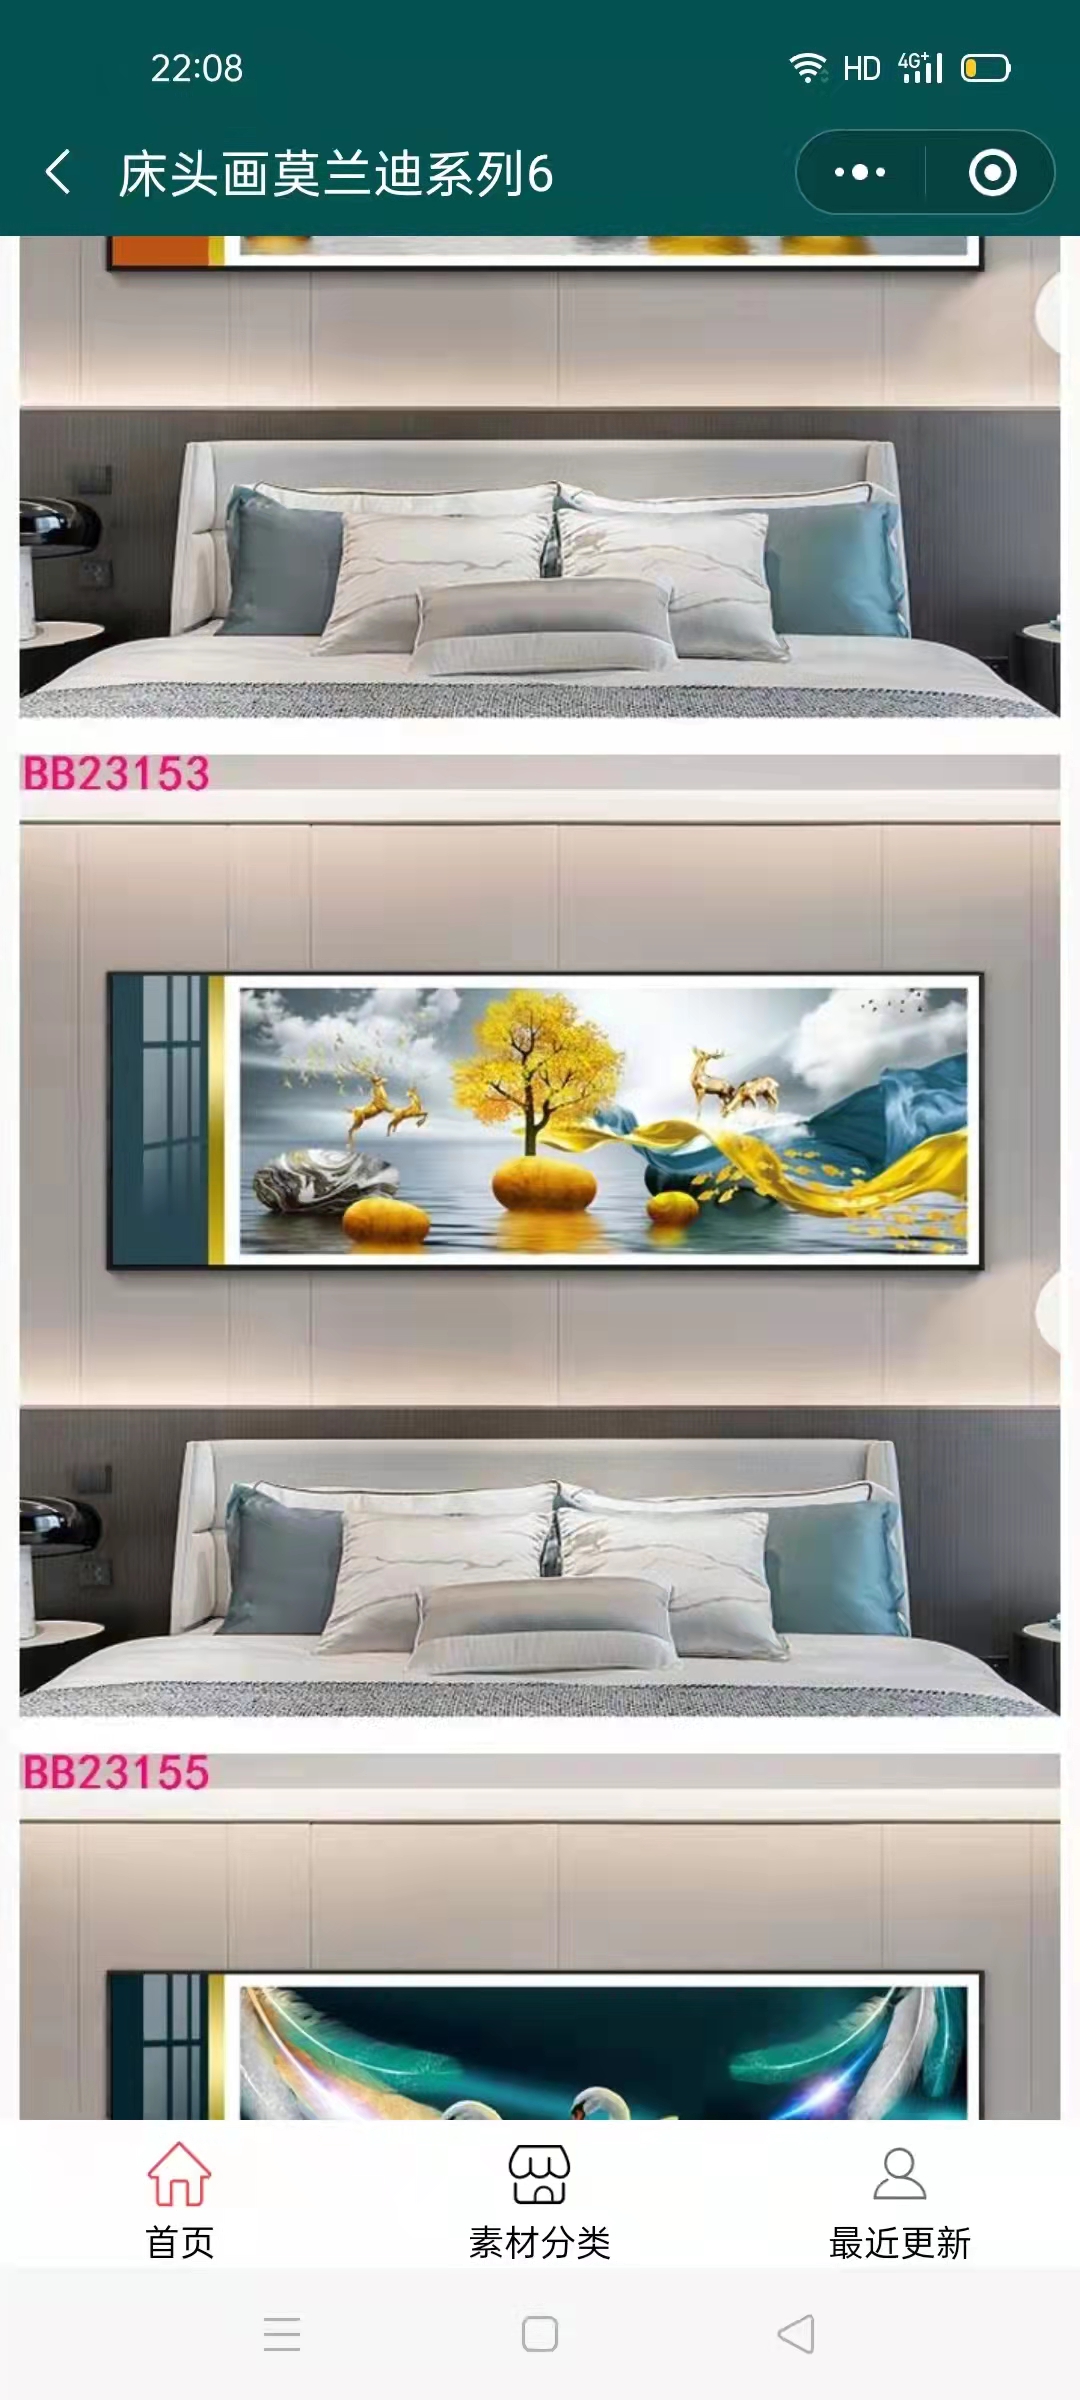 简约大气 重庆新中式床头画怎么卖 床头挂画